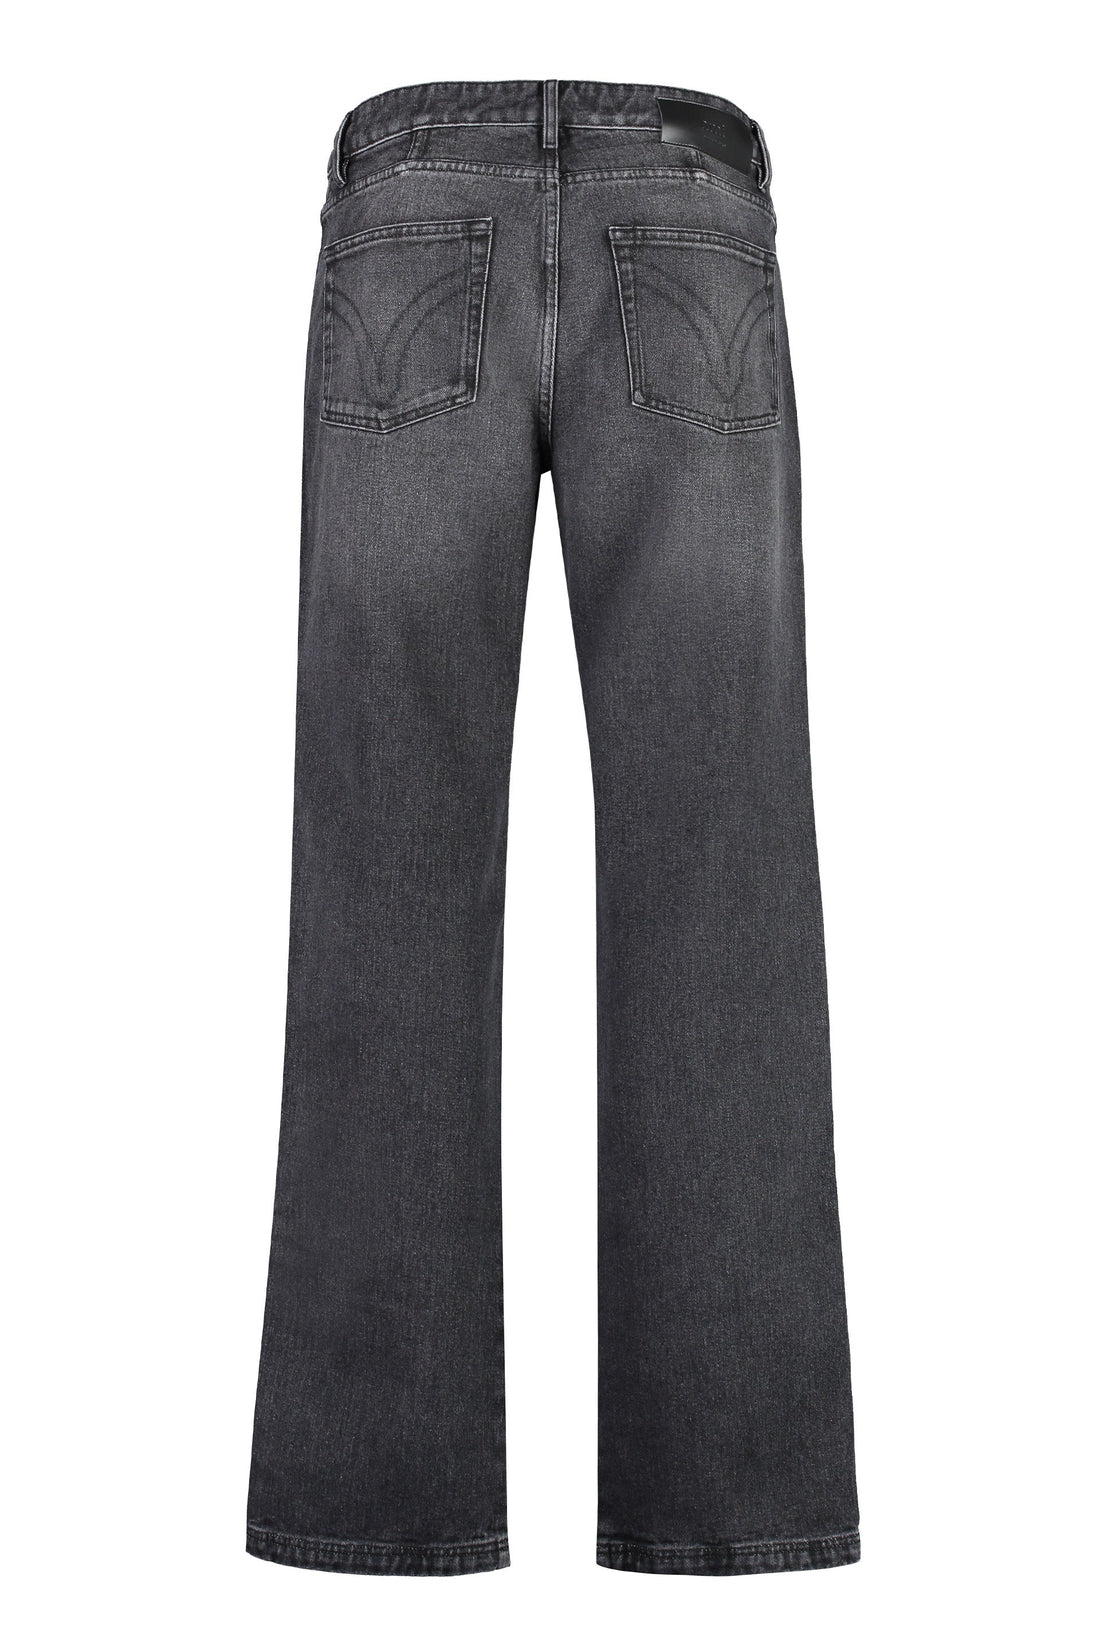 AMI PARIS-OUTLET-SALE-5-pocket straight-leg jeans-ARCHIVIST